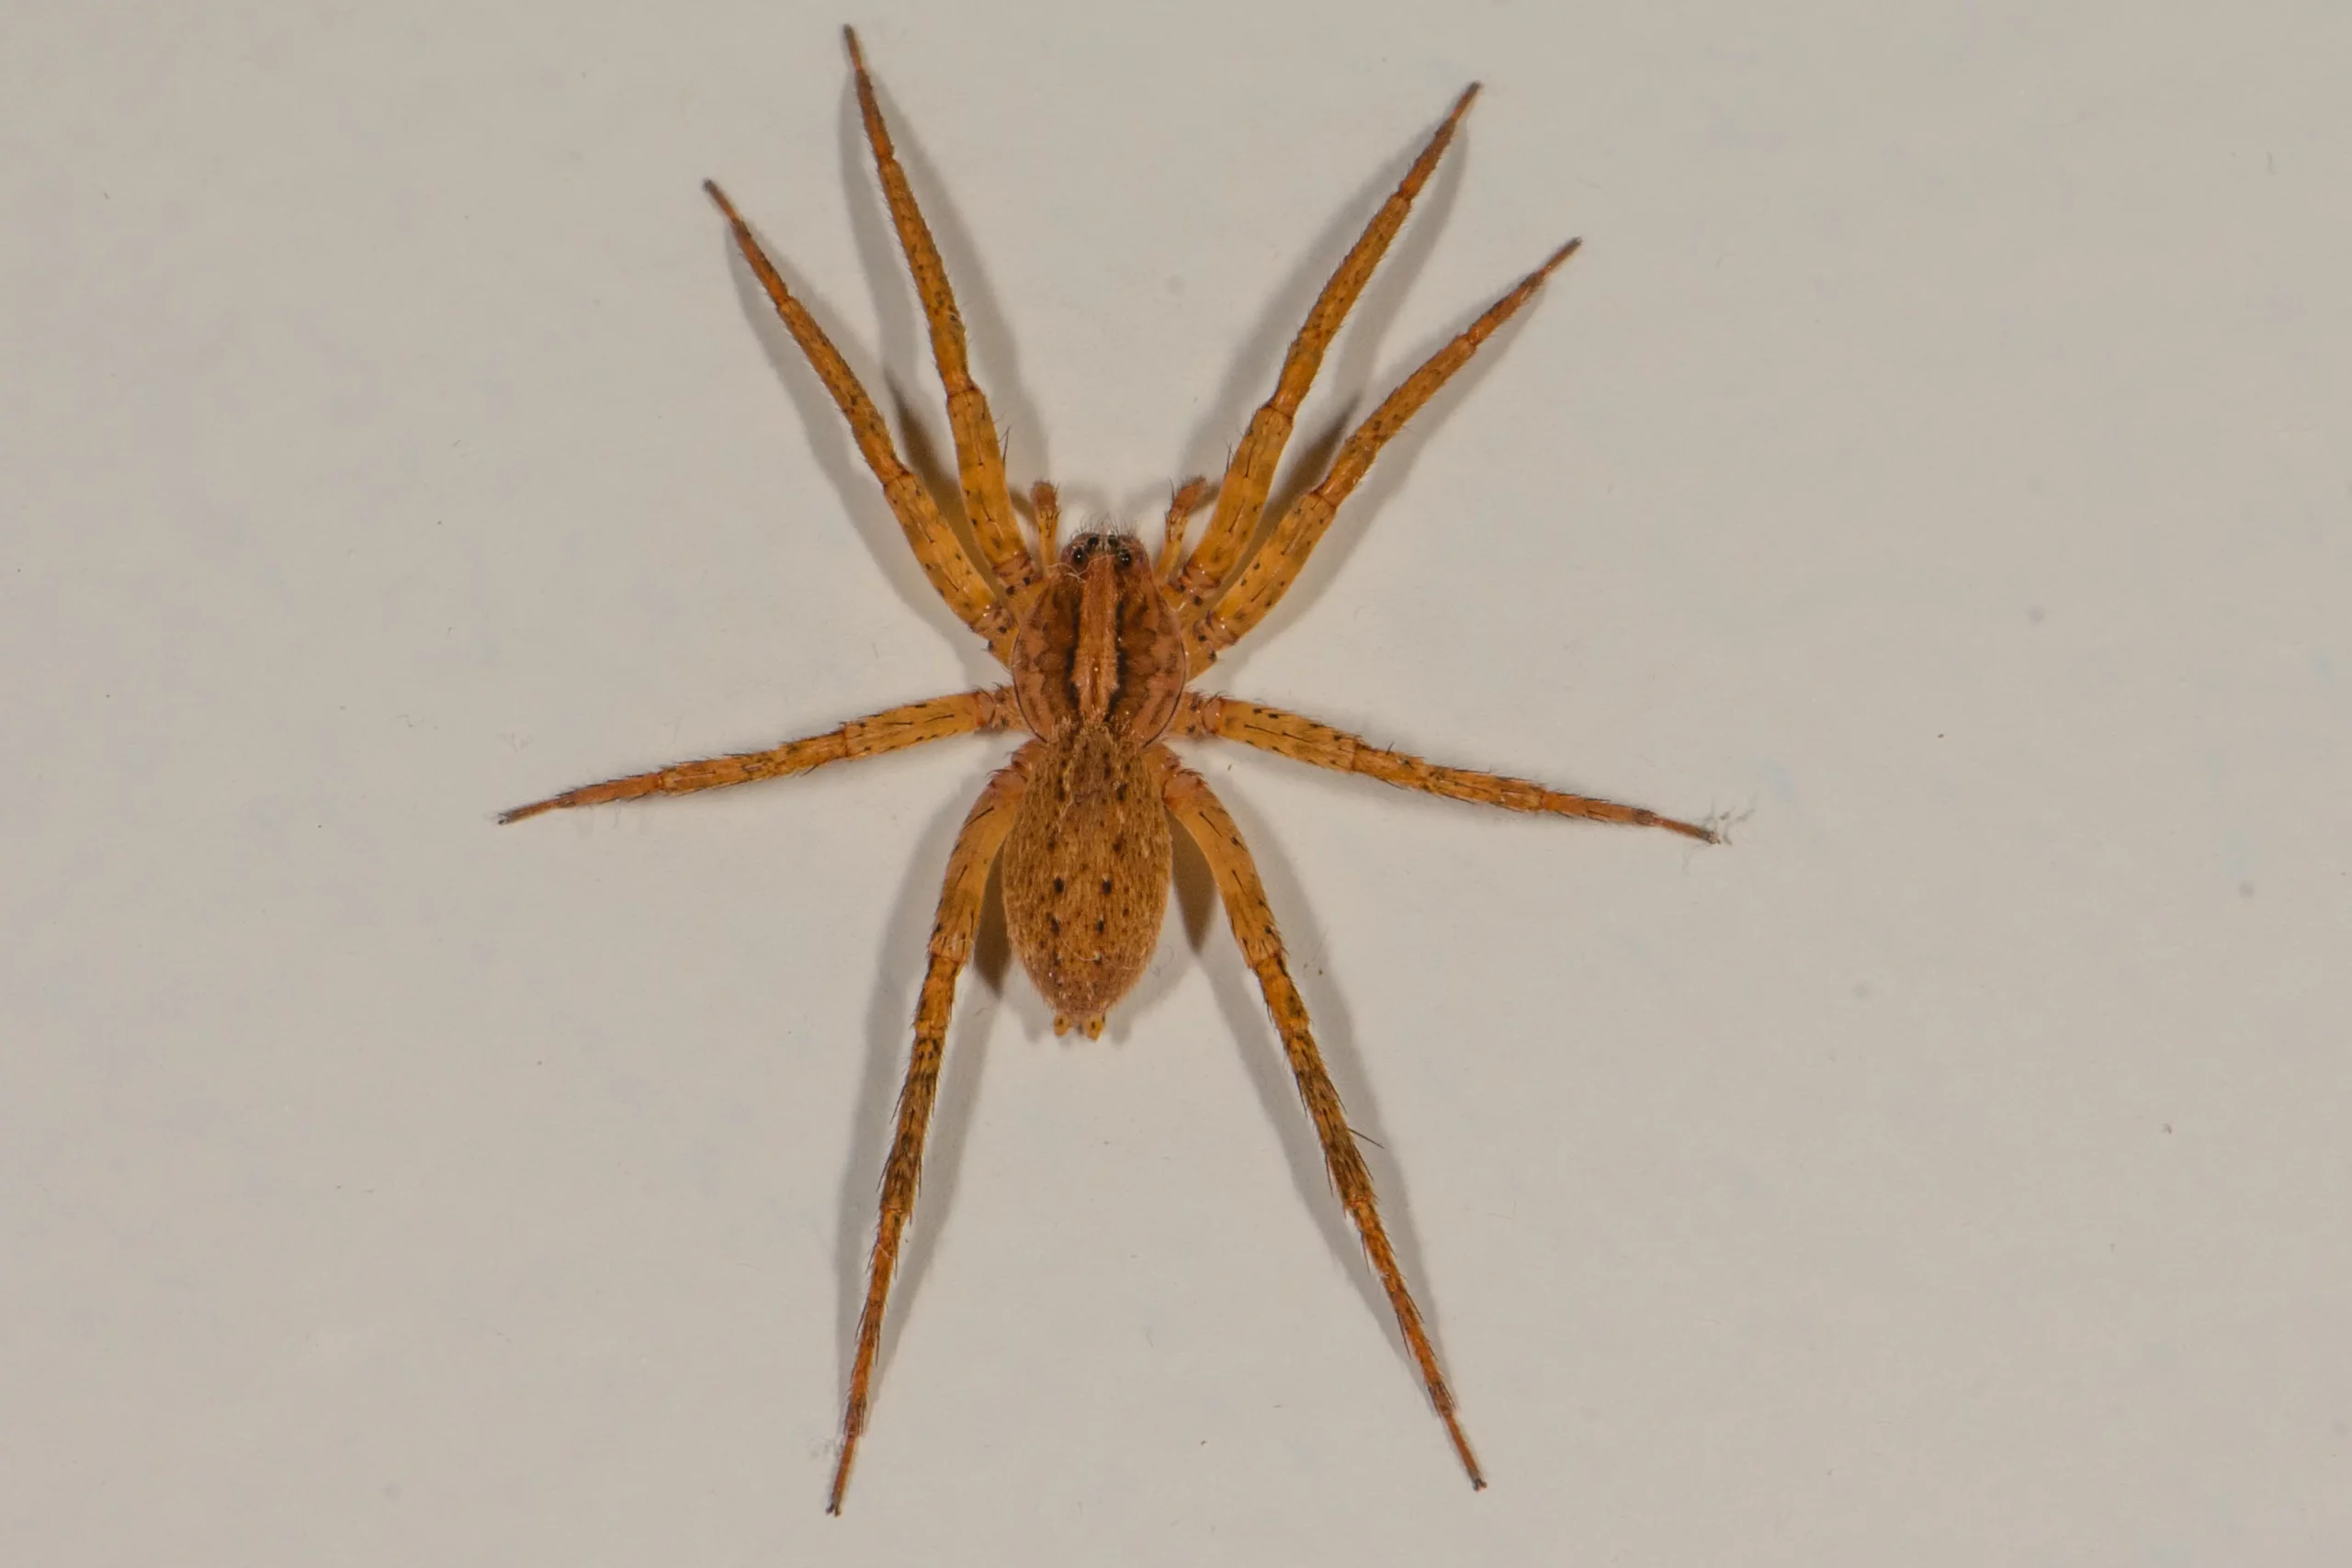 Anahita Spider